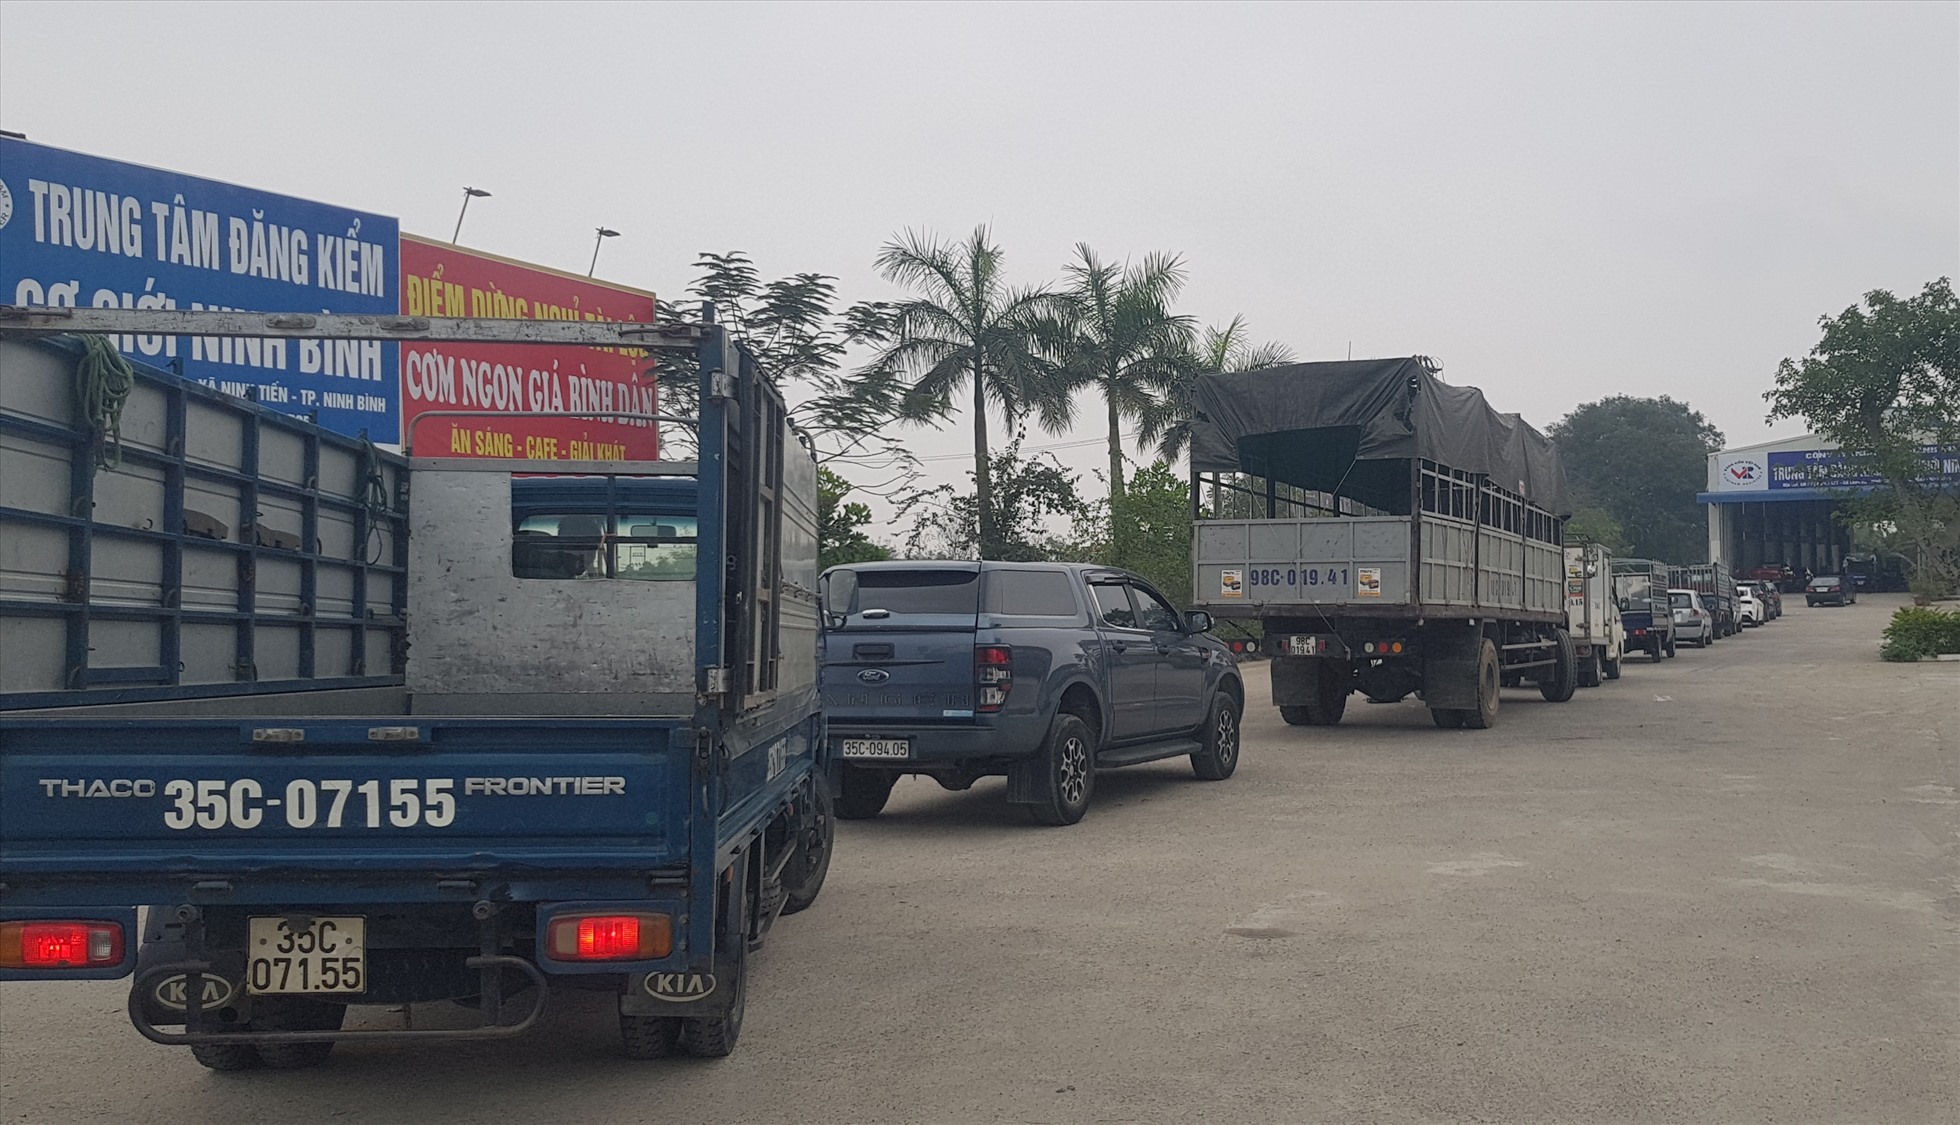 Từng đoàn xe ôtô xếp hqngf dài chờ đăng kiểm tại Trung tâm đăng kiểm xe cơ giới Ninh Bình 35-04D. Ảnh: Diệu Anh